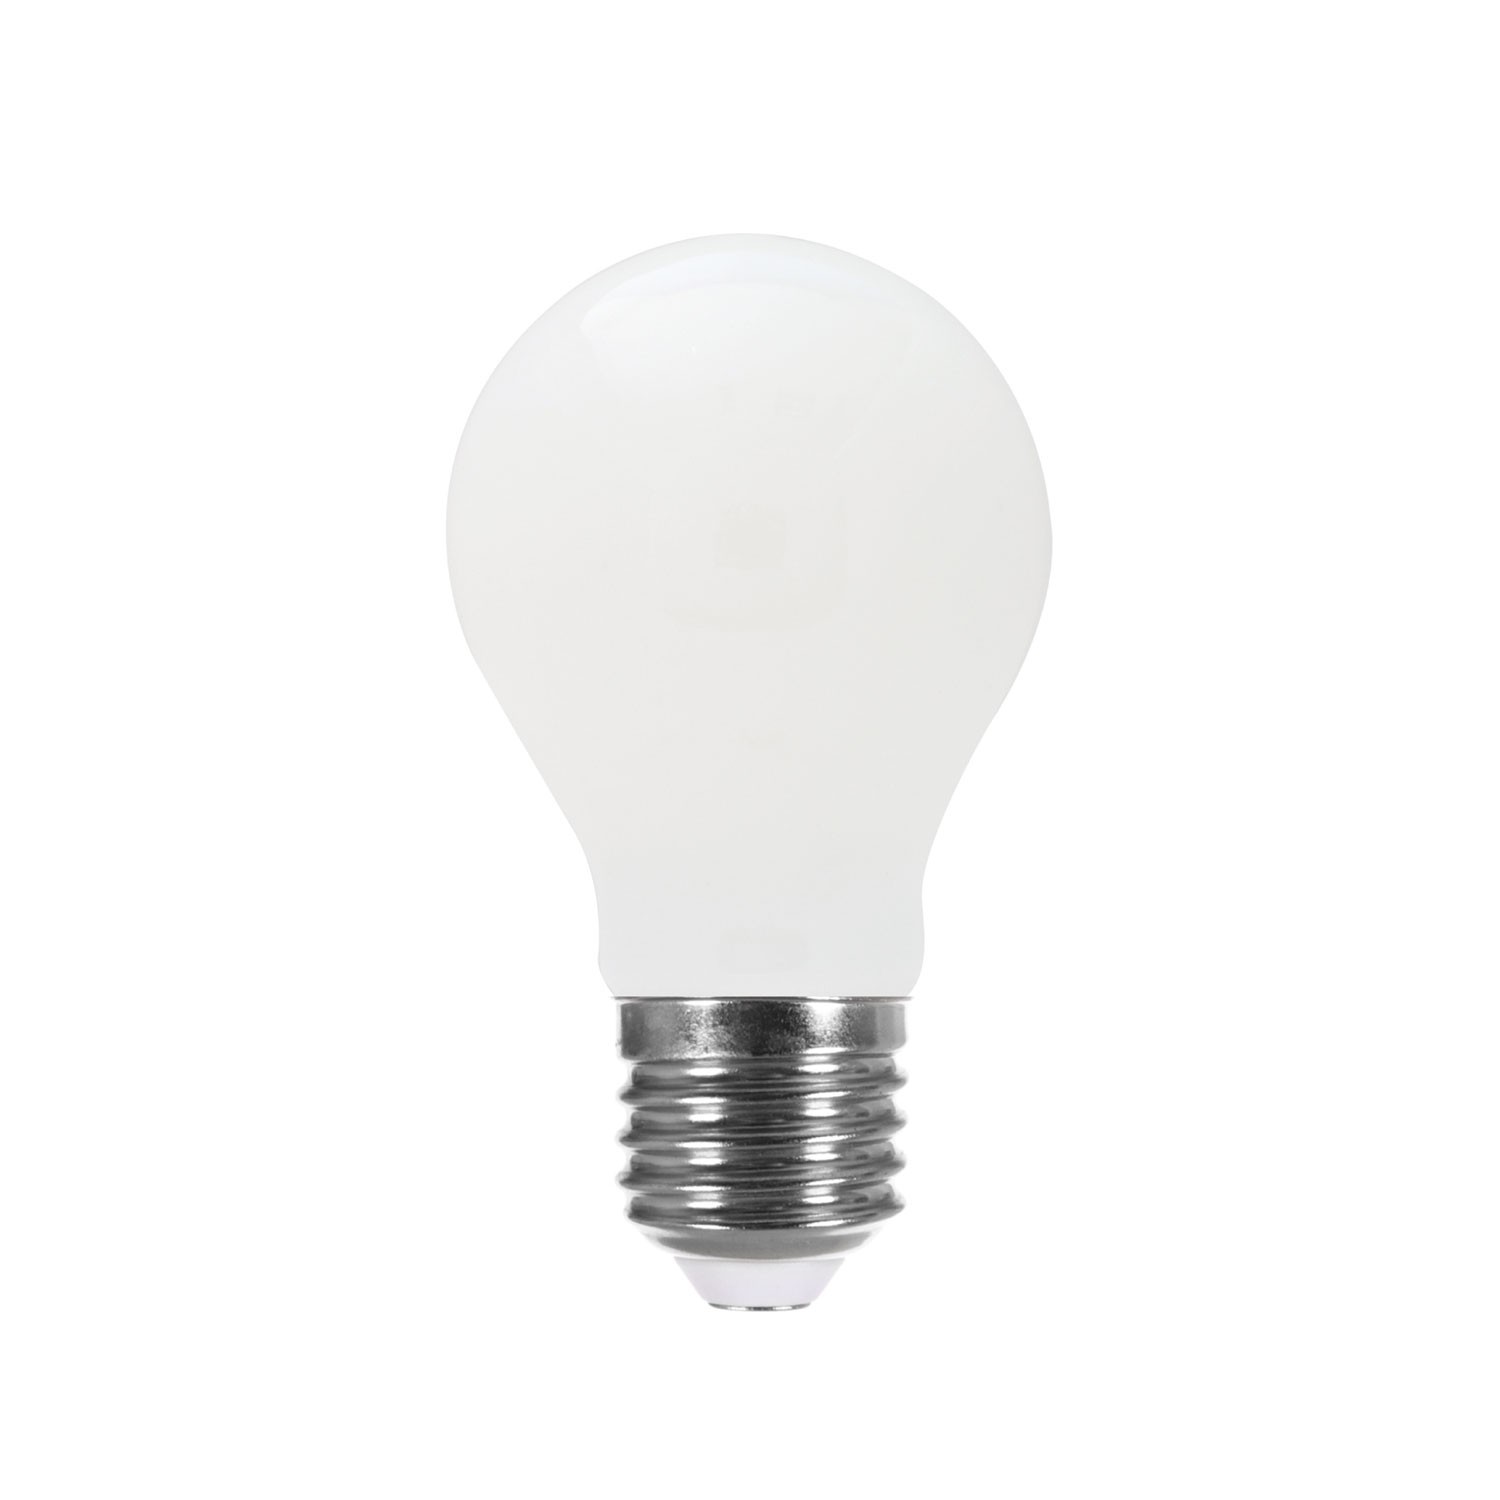 Ampoule UV LED noire E27 8W, lampe UV ampoule noire, lampe